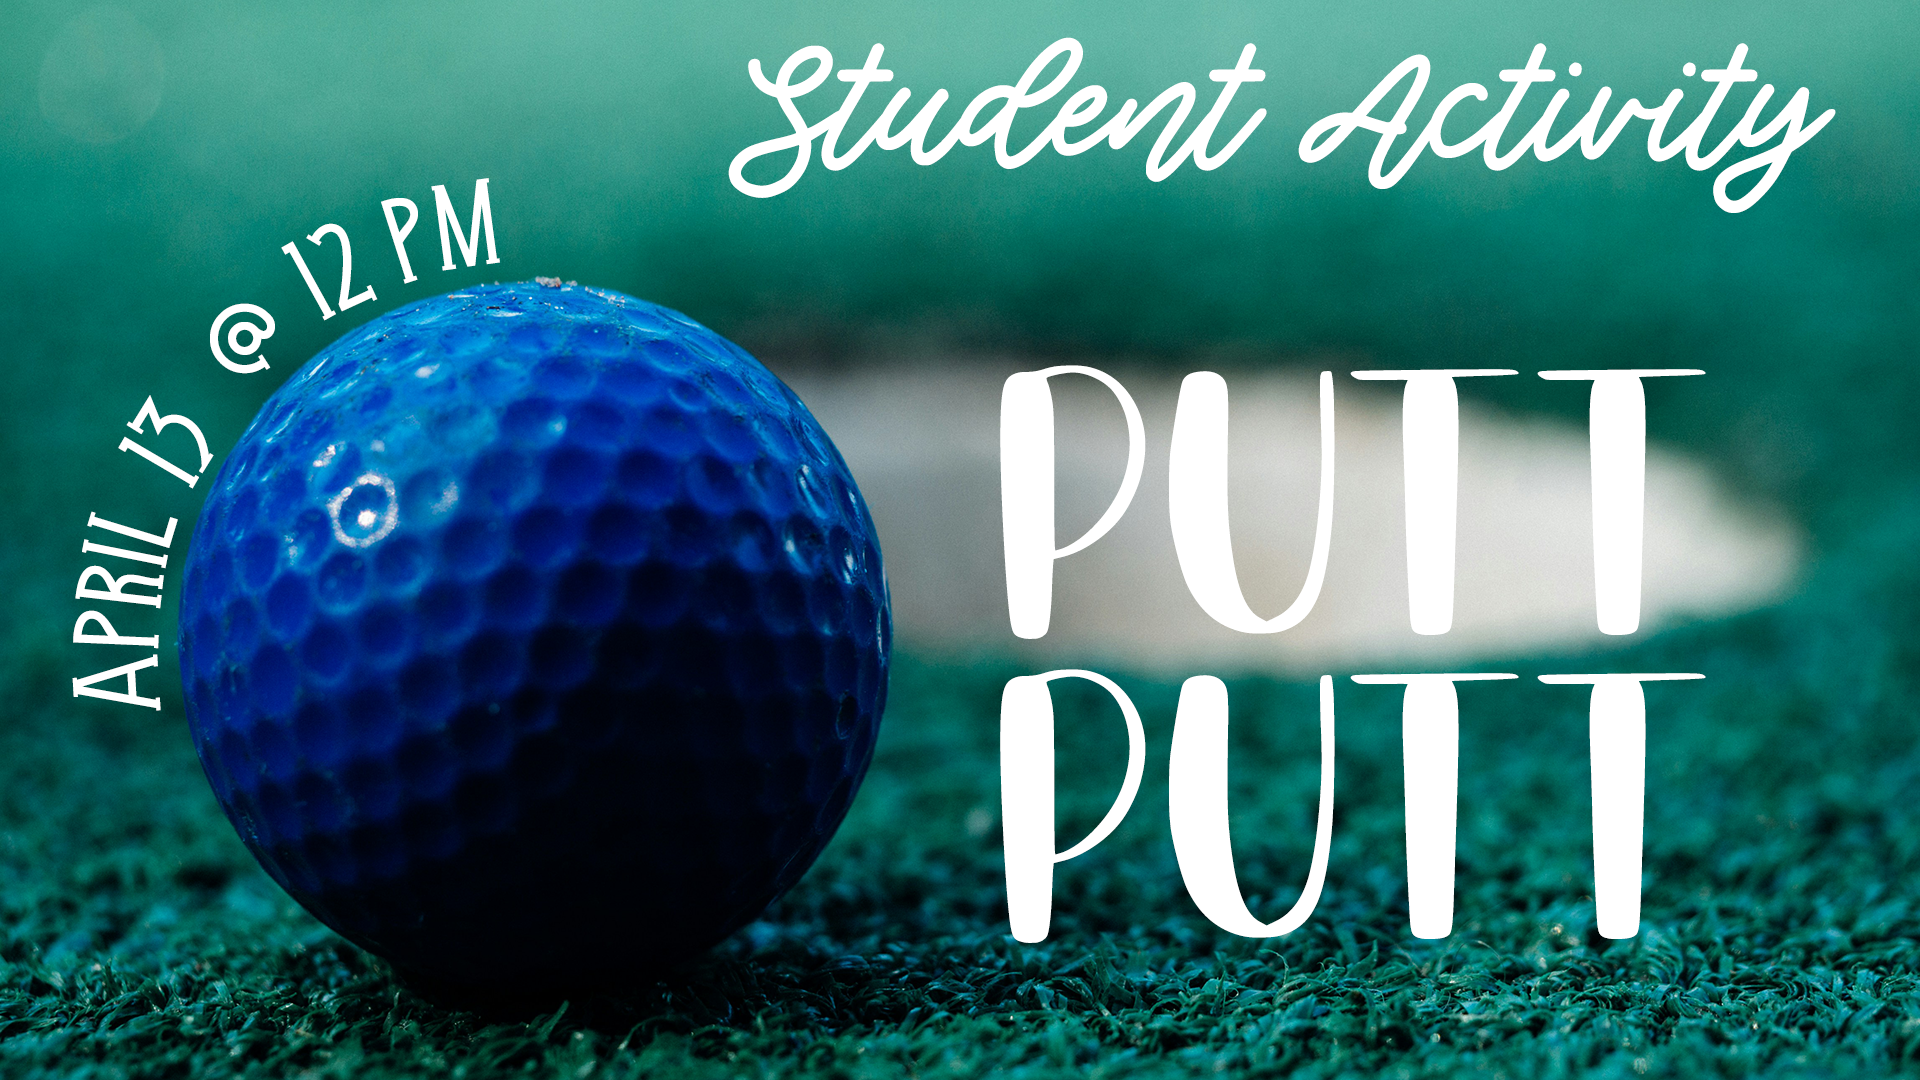 Student Activity: Putt Putt